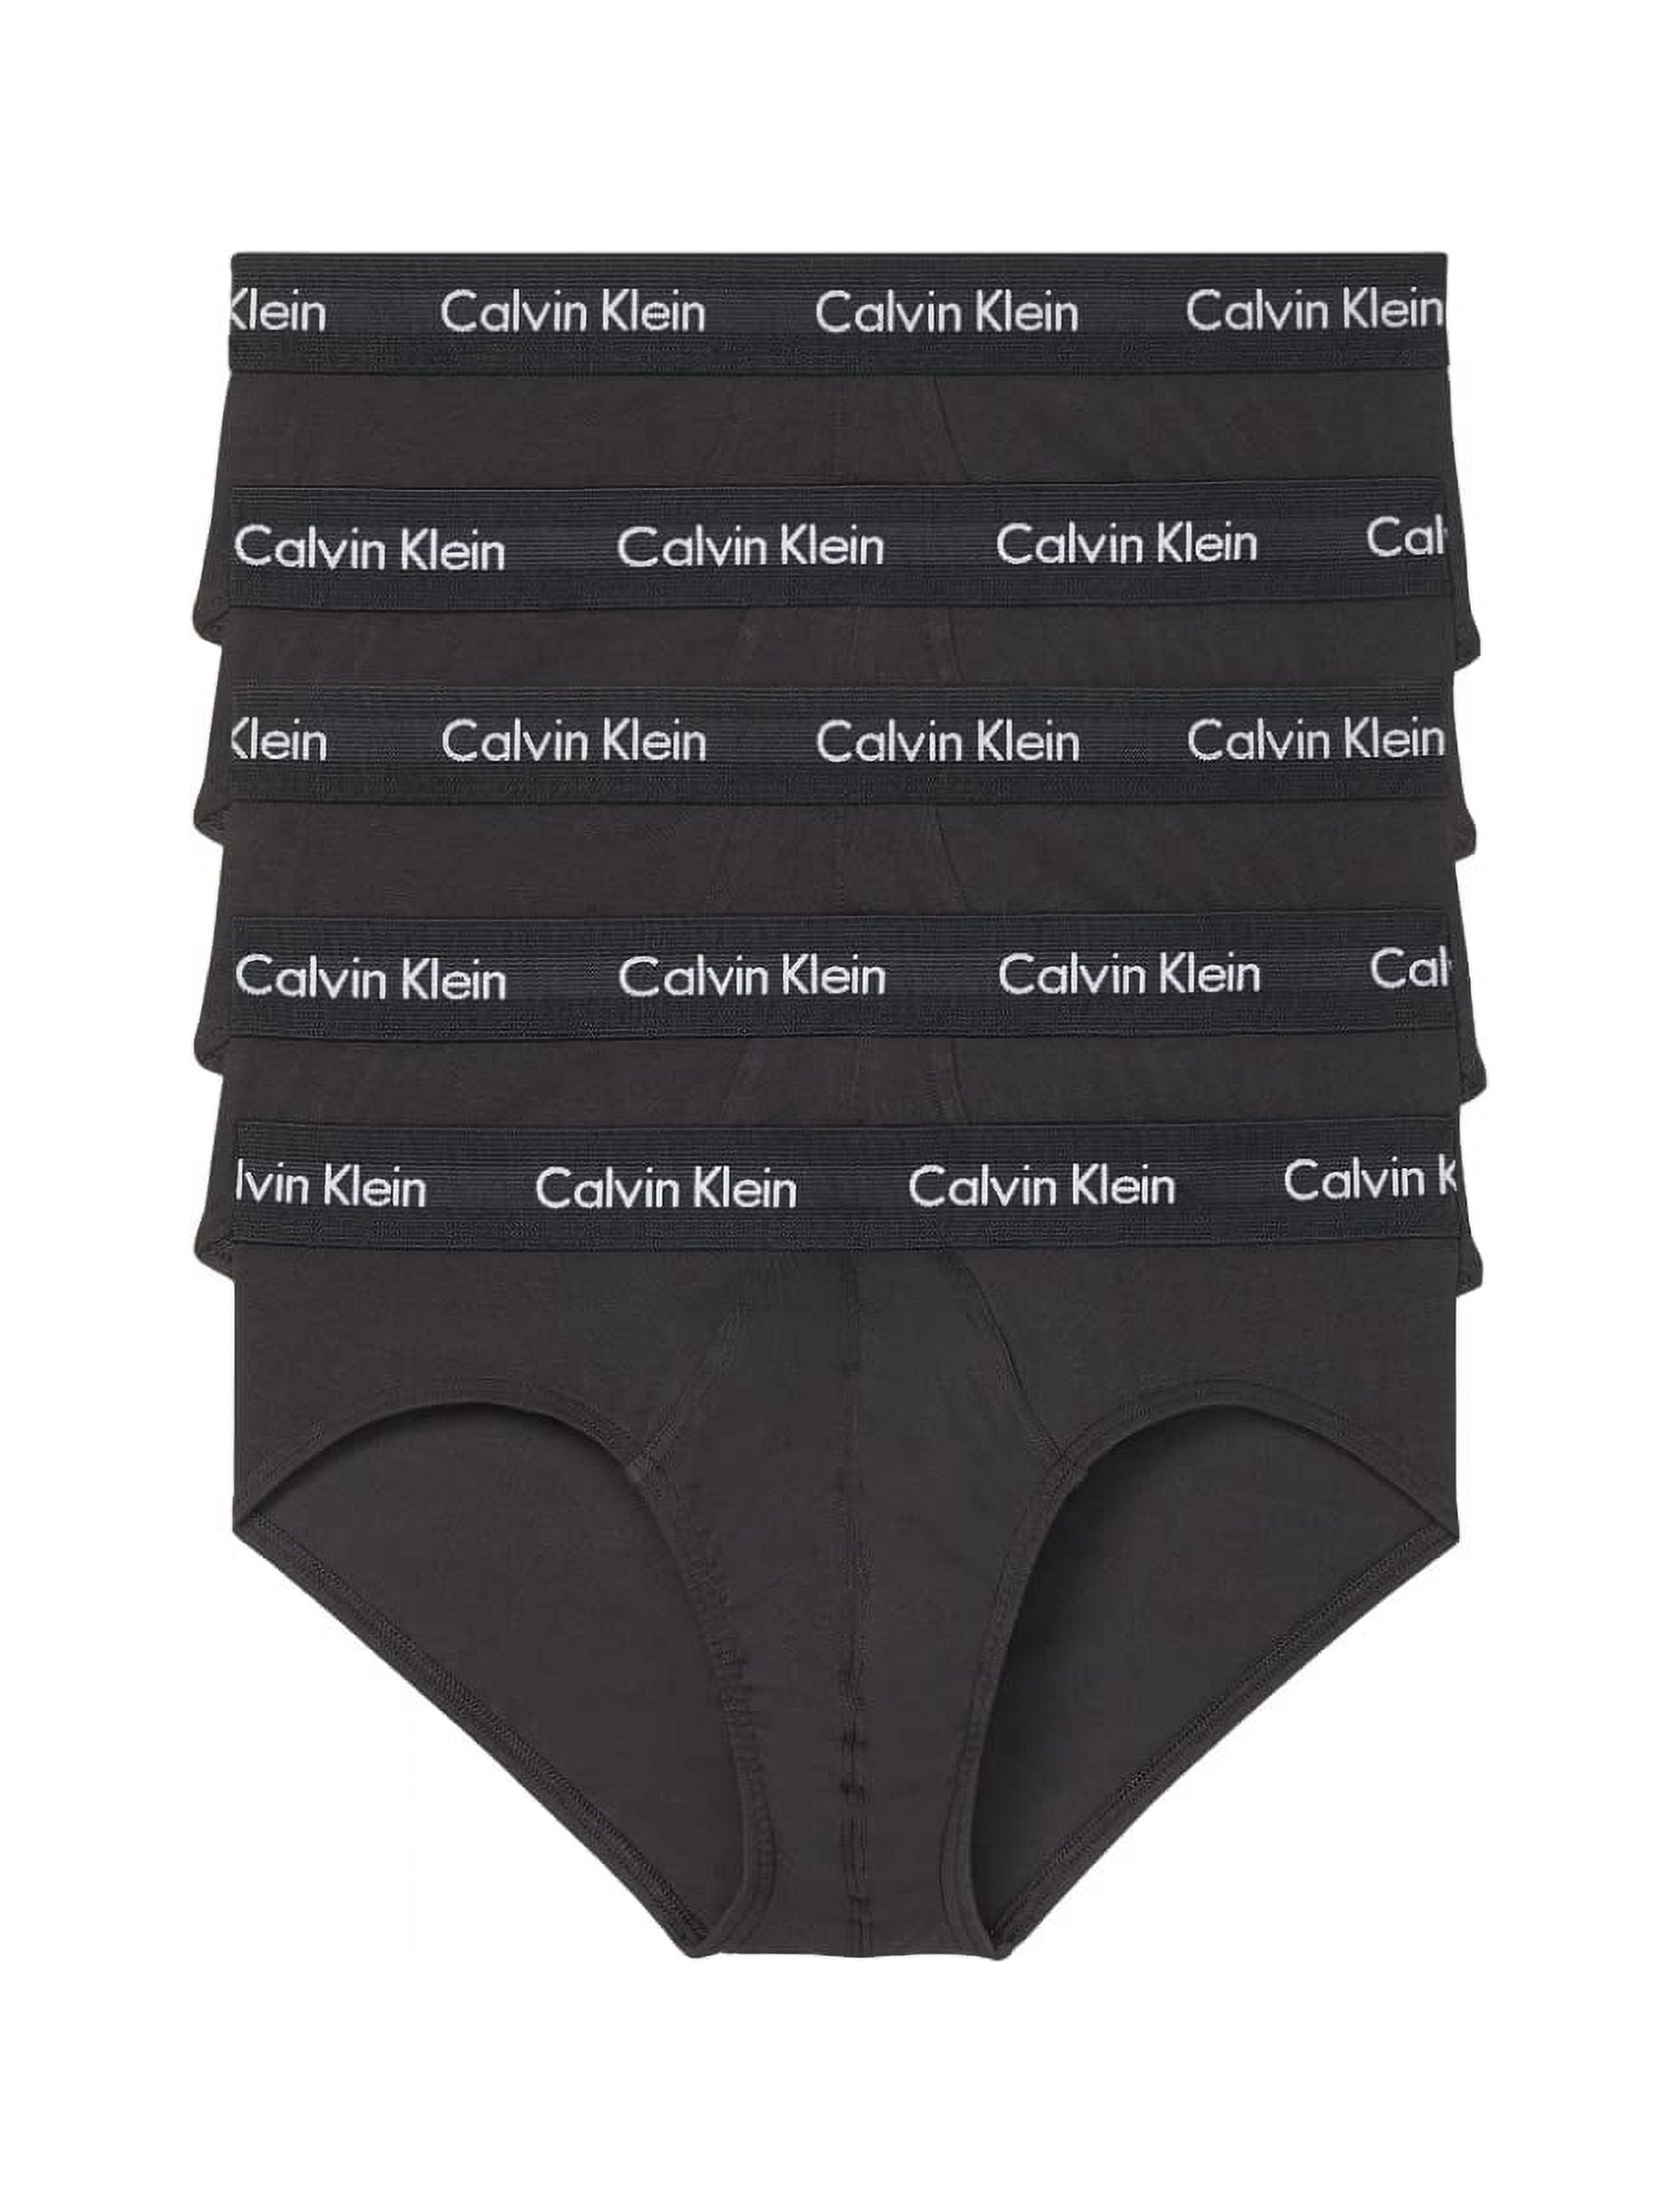 Calvin Klein Men's Cotton Stretch 5-Pack Hip Brief, 5 Black, XL